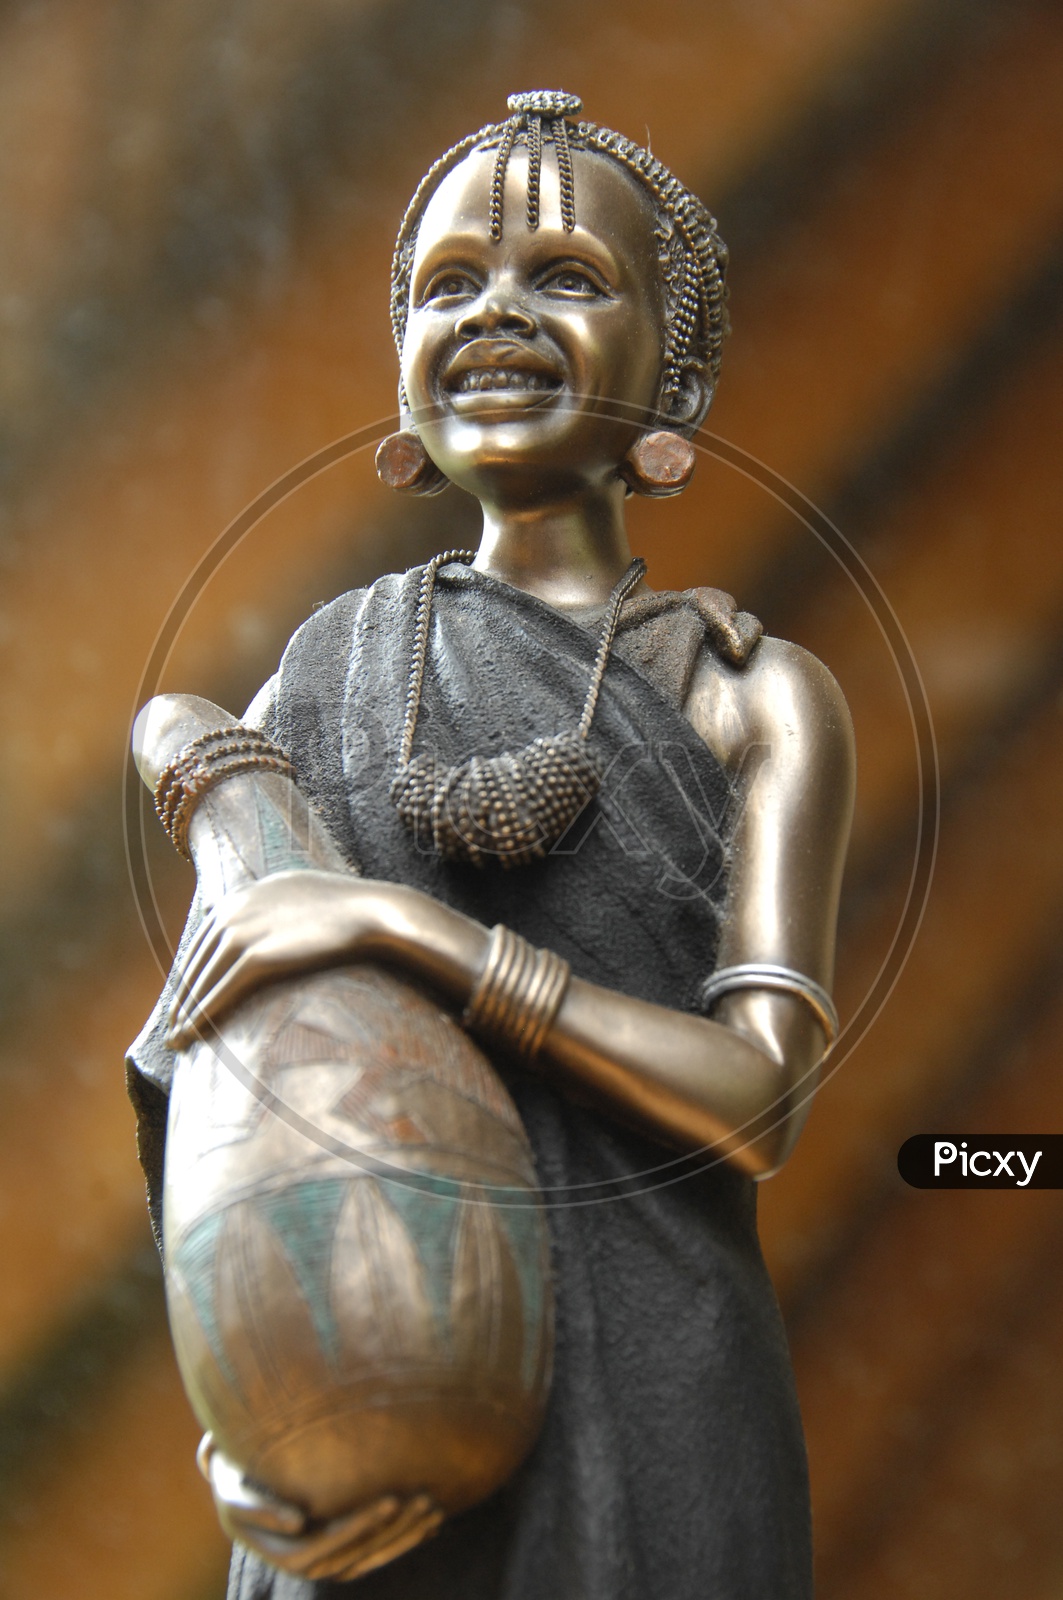 A Bronze sculpture of a woman